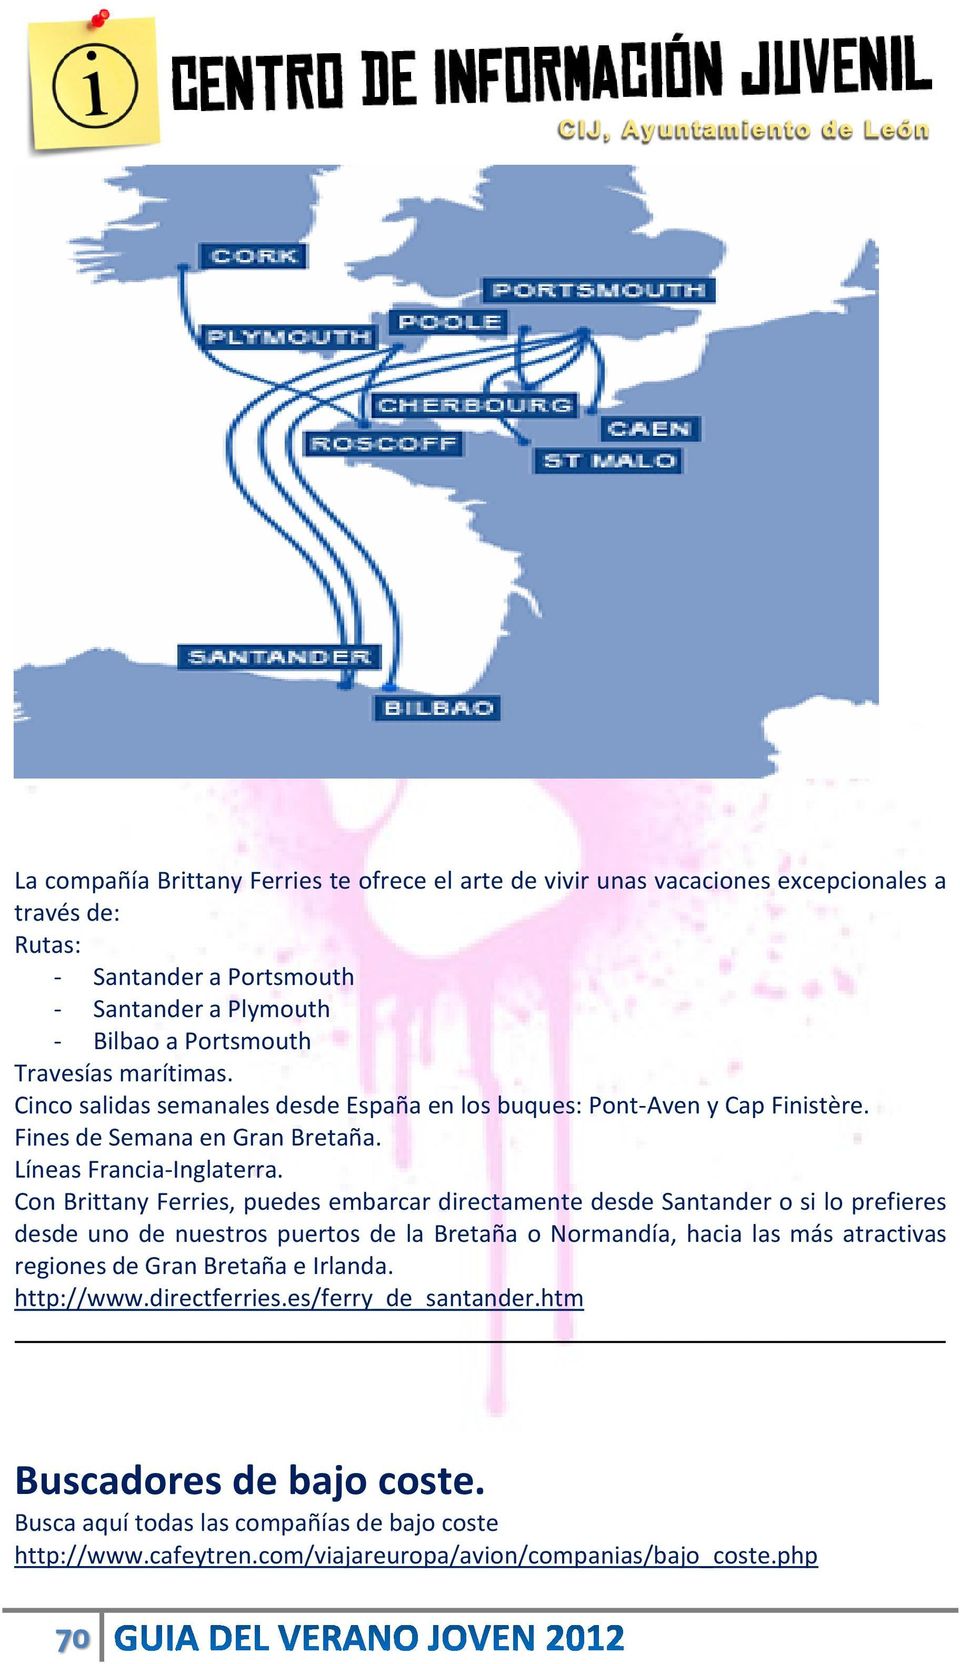 Con Brittany Ferries, puedes embarcar directamente desde Santander o si lo prefieres desde uno de nuestros puertos de la Bretaña o Normandía, hacia las más atractivas regiones de